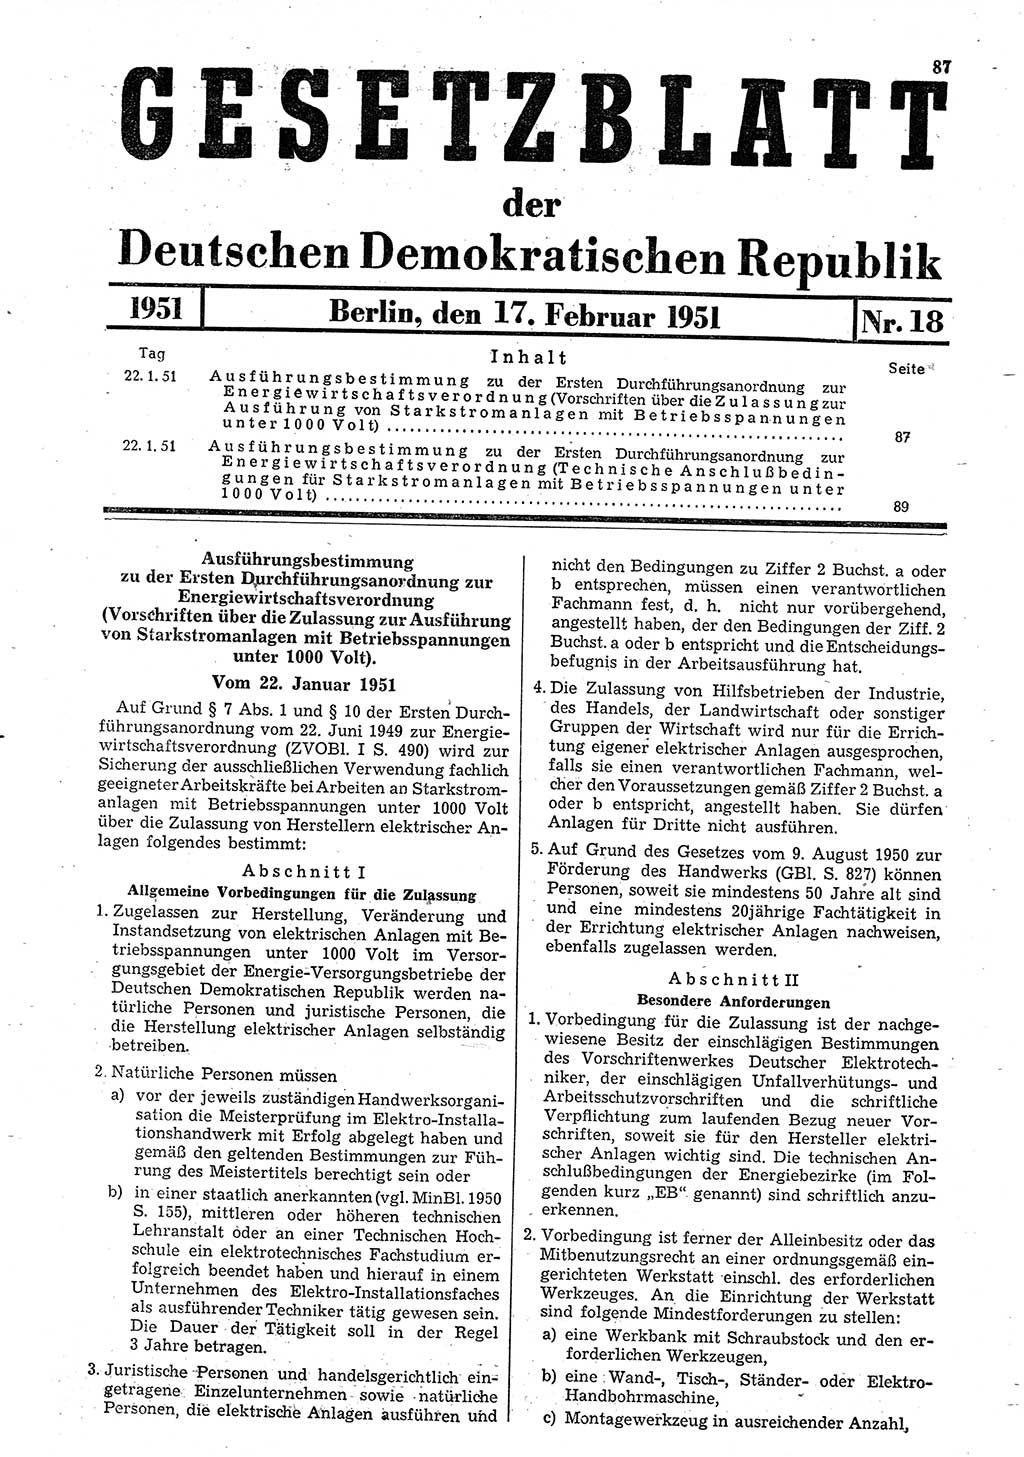 Gesetzblatt (GBl.) der Deutschen Demokratischen Republik (DDR) 1951, Seite 87 (GBl. DDR 1951, S. 87)